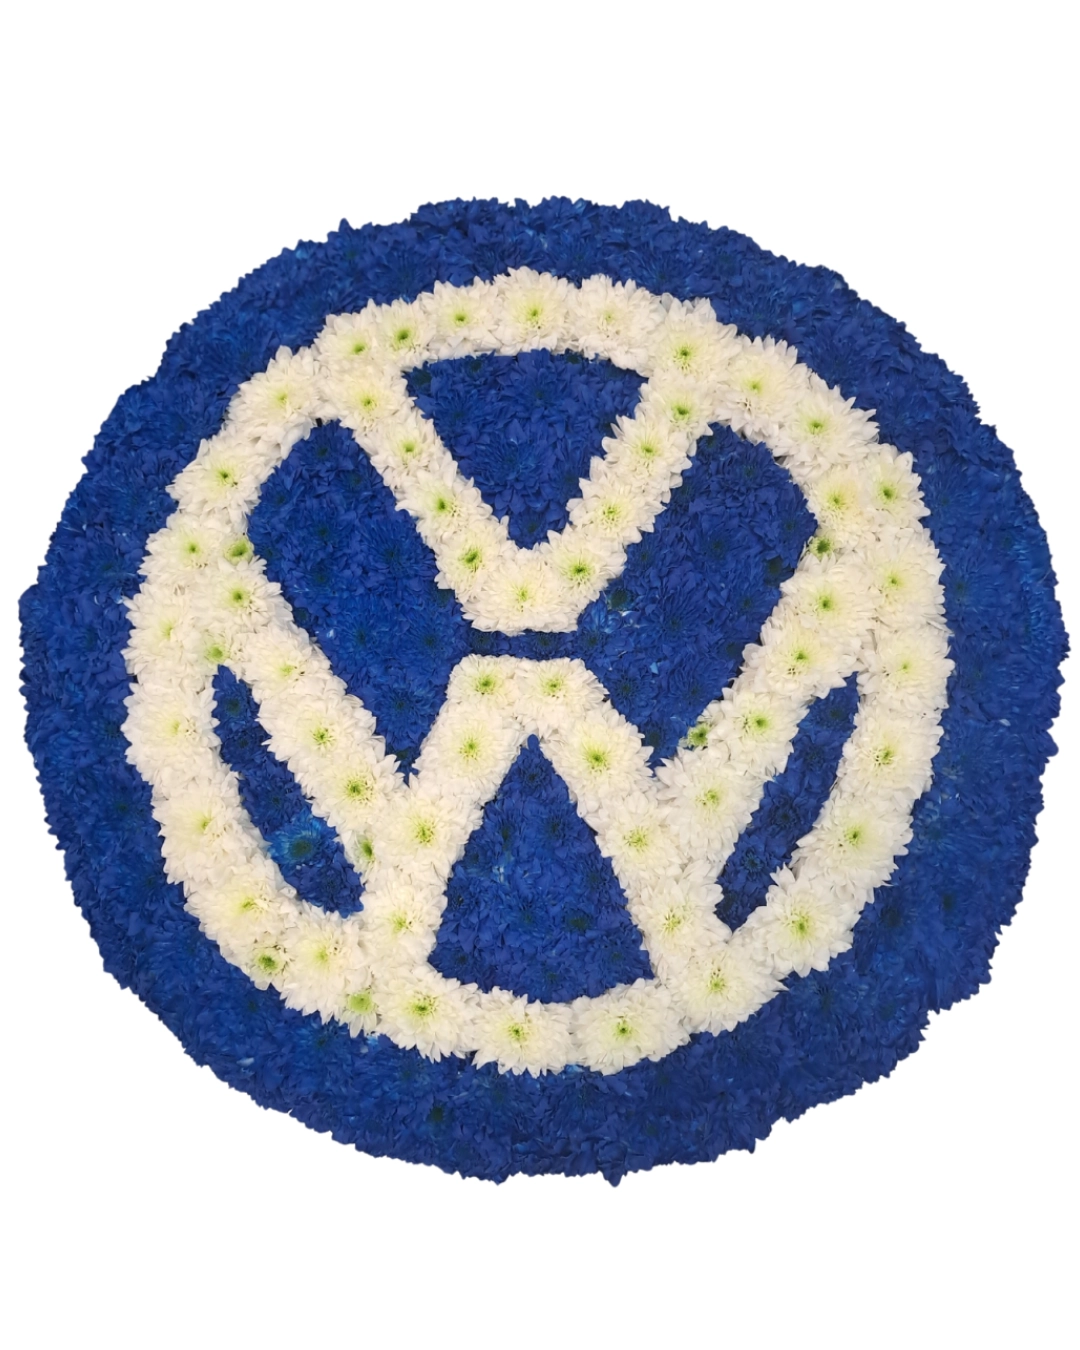 VW Volkswagen Car Badge